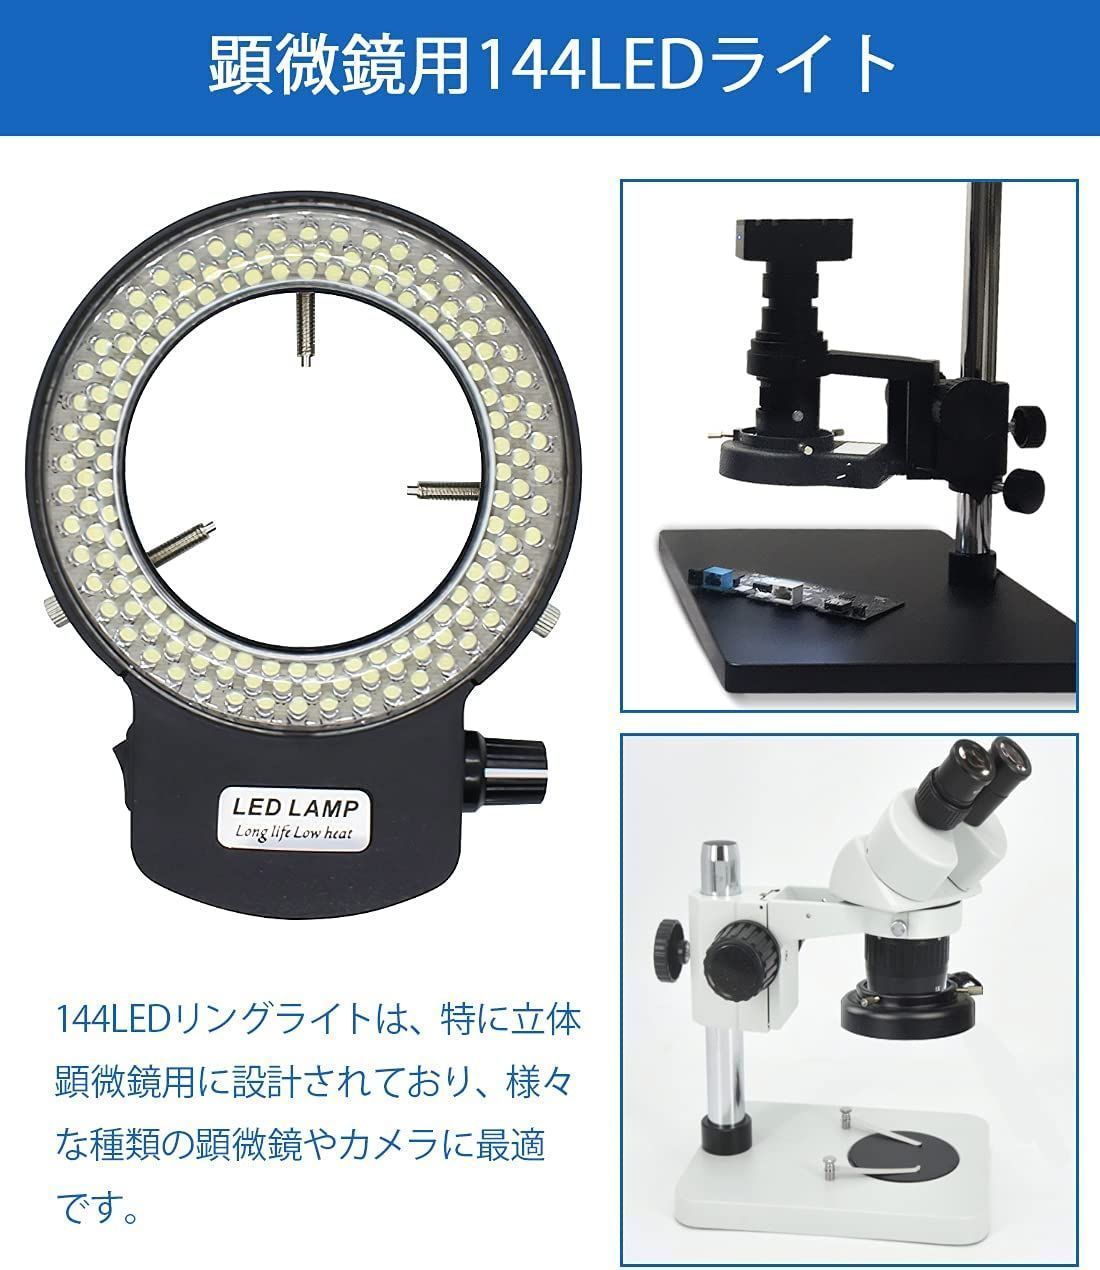 Shengshou LEDリング照明ライト 実体顕微鏡用LED照明装置 144 - メルカリ